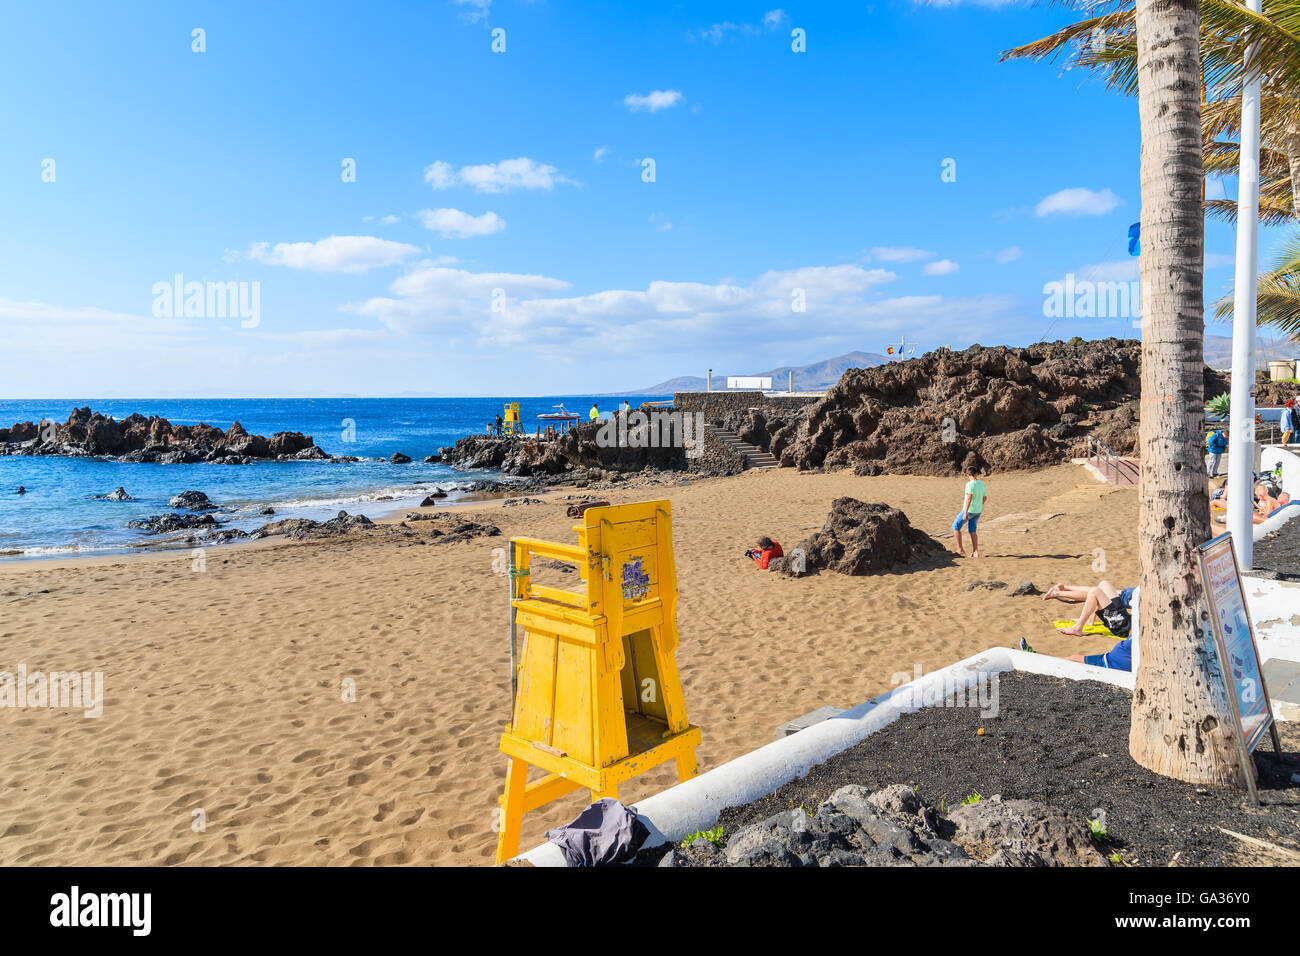 PUERTO DEL CARMEN, Lanzarote Island - Jan 17, 2015: Giallo TORRE bagnino sulla spiaggia tropicale in Puerto del Carmen città di vacanze. Le isole Canarie sono meta di vacanze tutto l'anno. Foto Stock